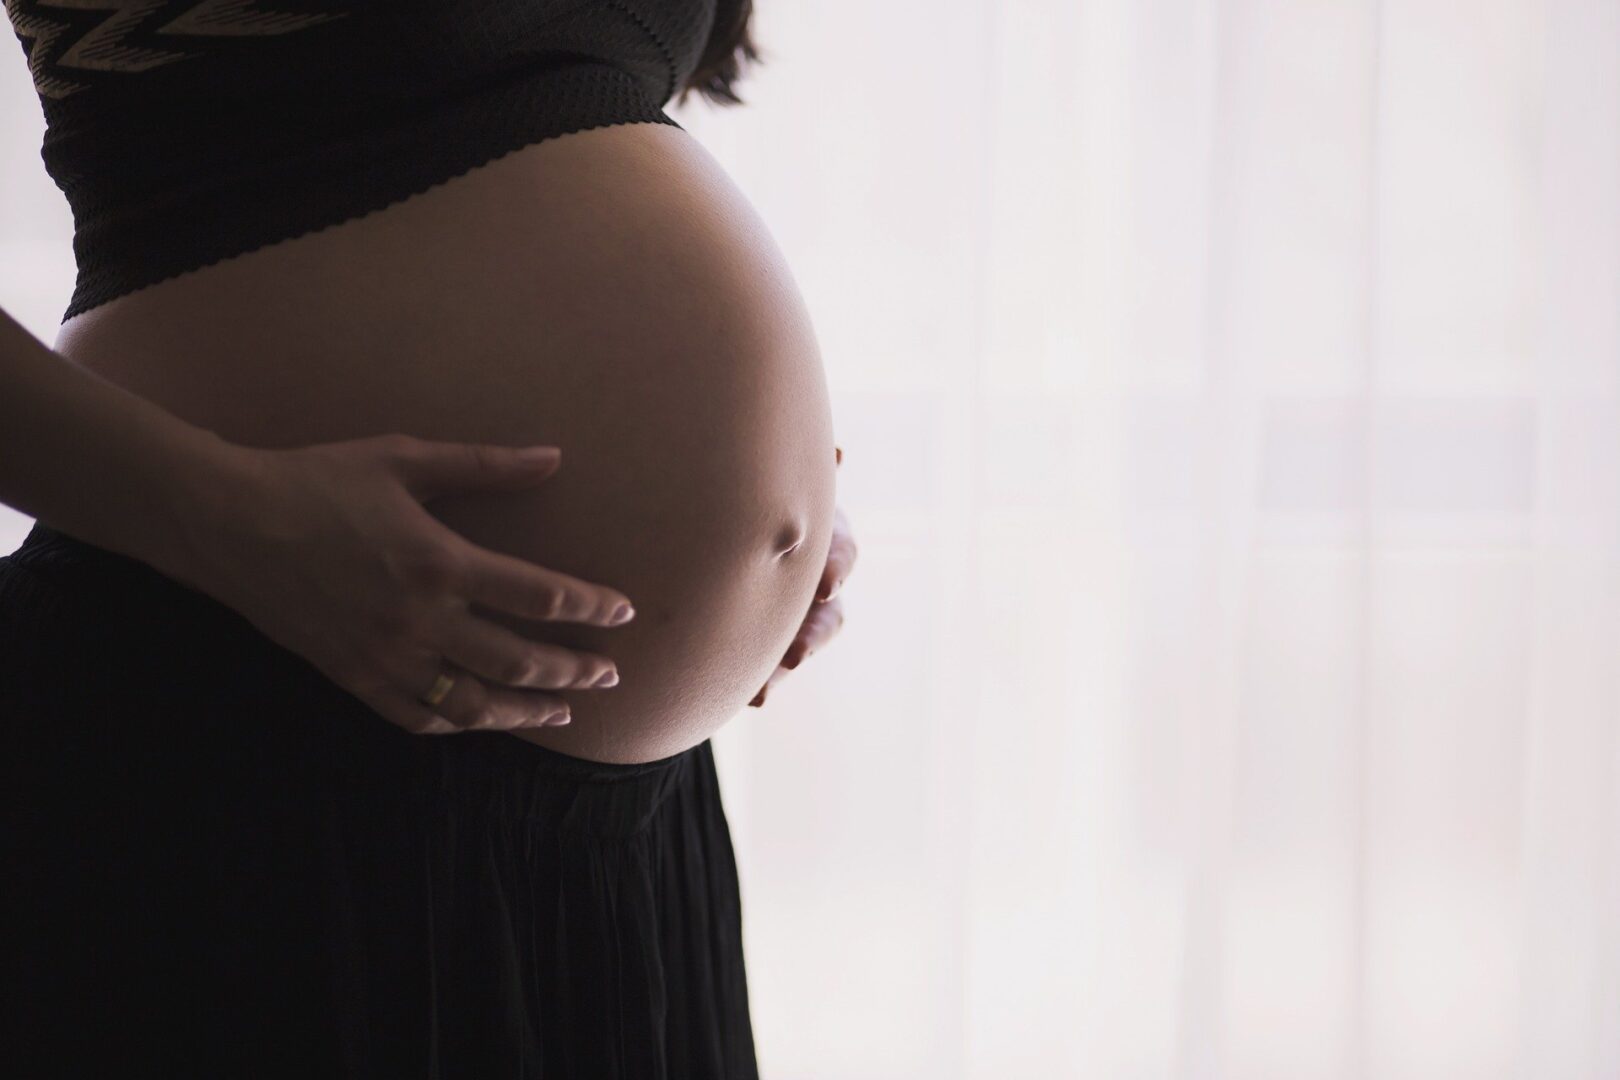 remedios que gravida nao pode tomar veja as categorias de risco 2 - Medicamentos que las mujeres embarazadas no pueden tomar: categorías de riesgo